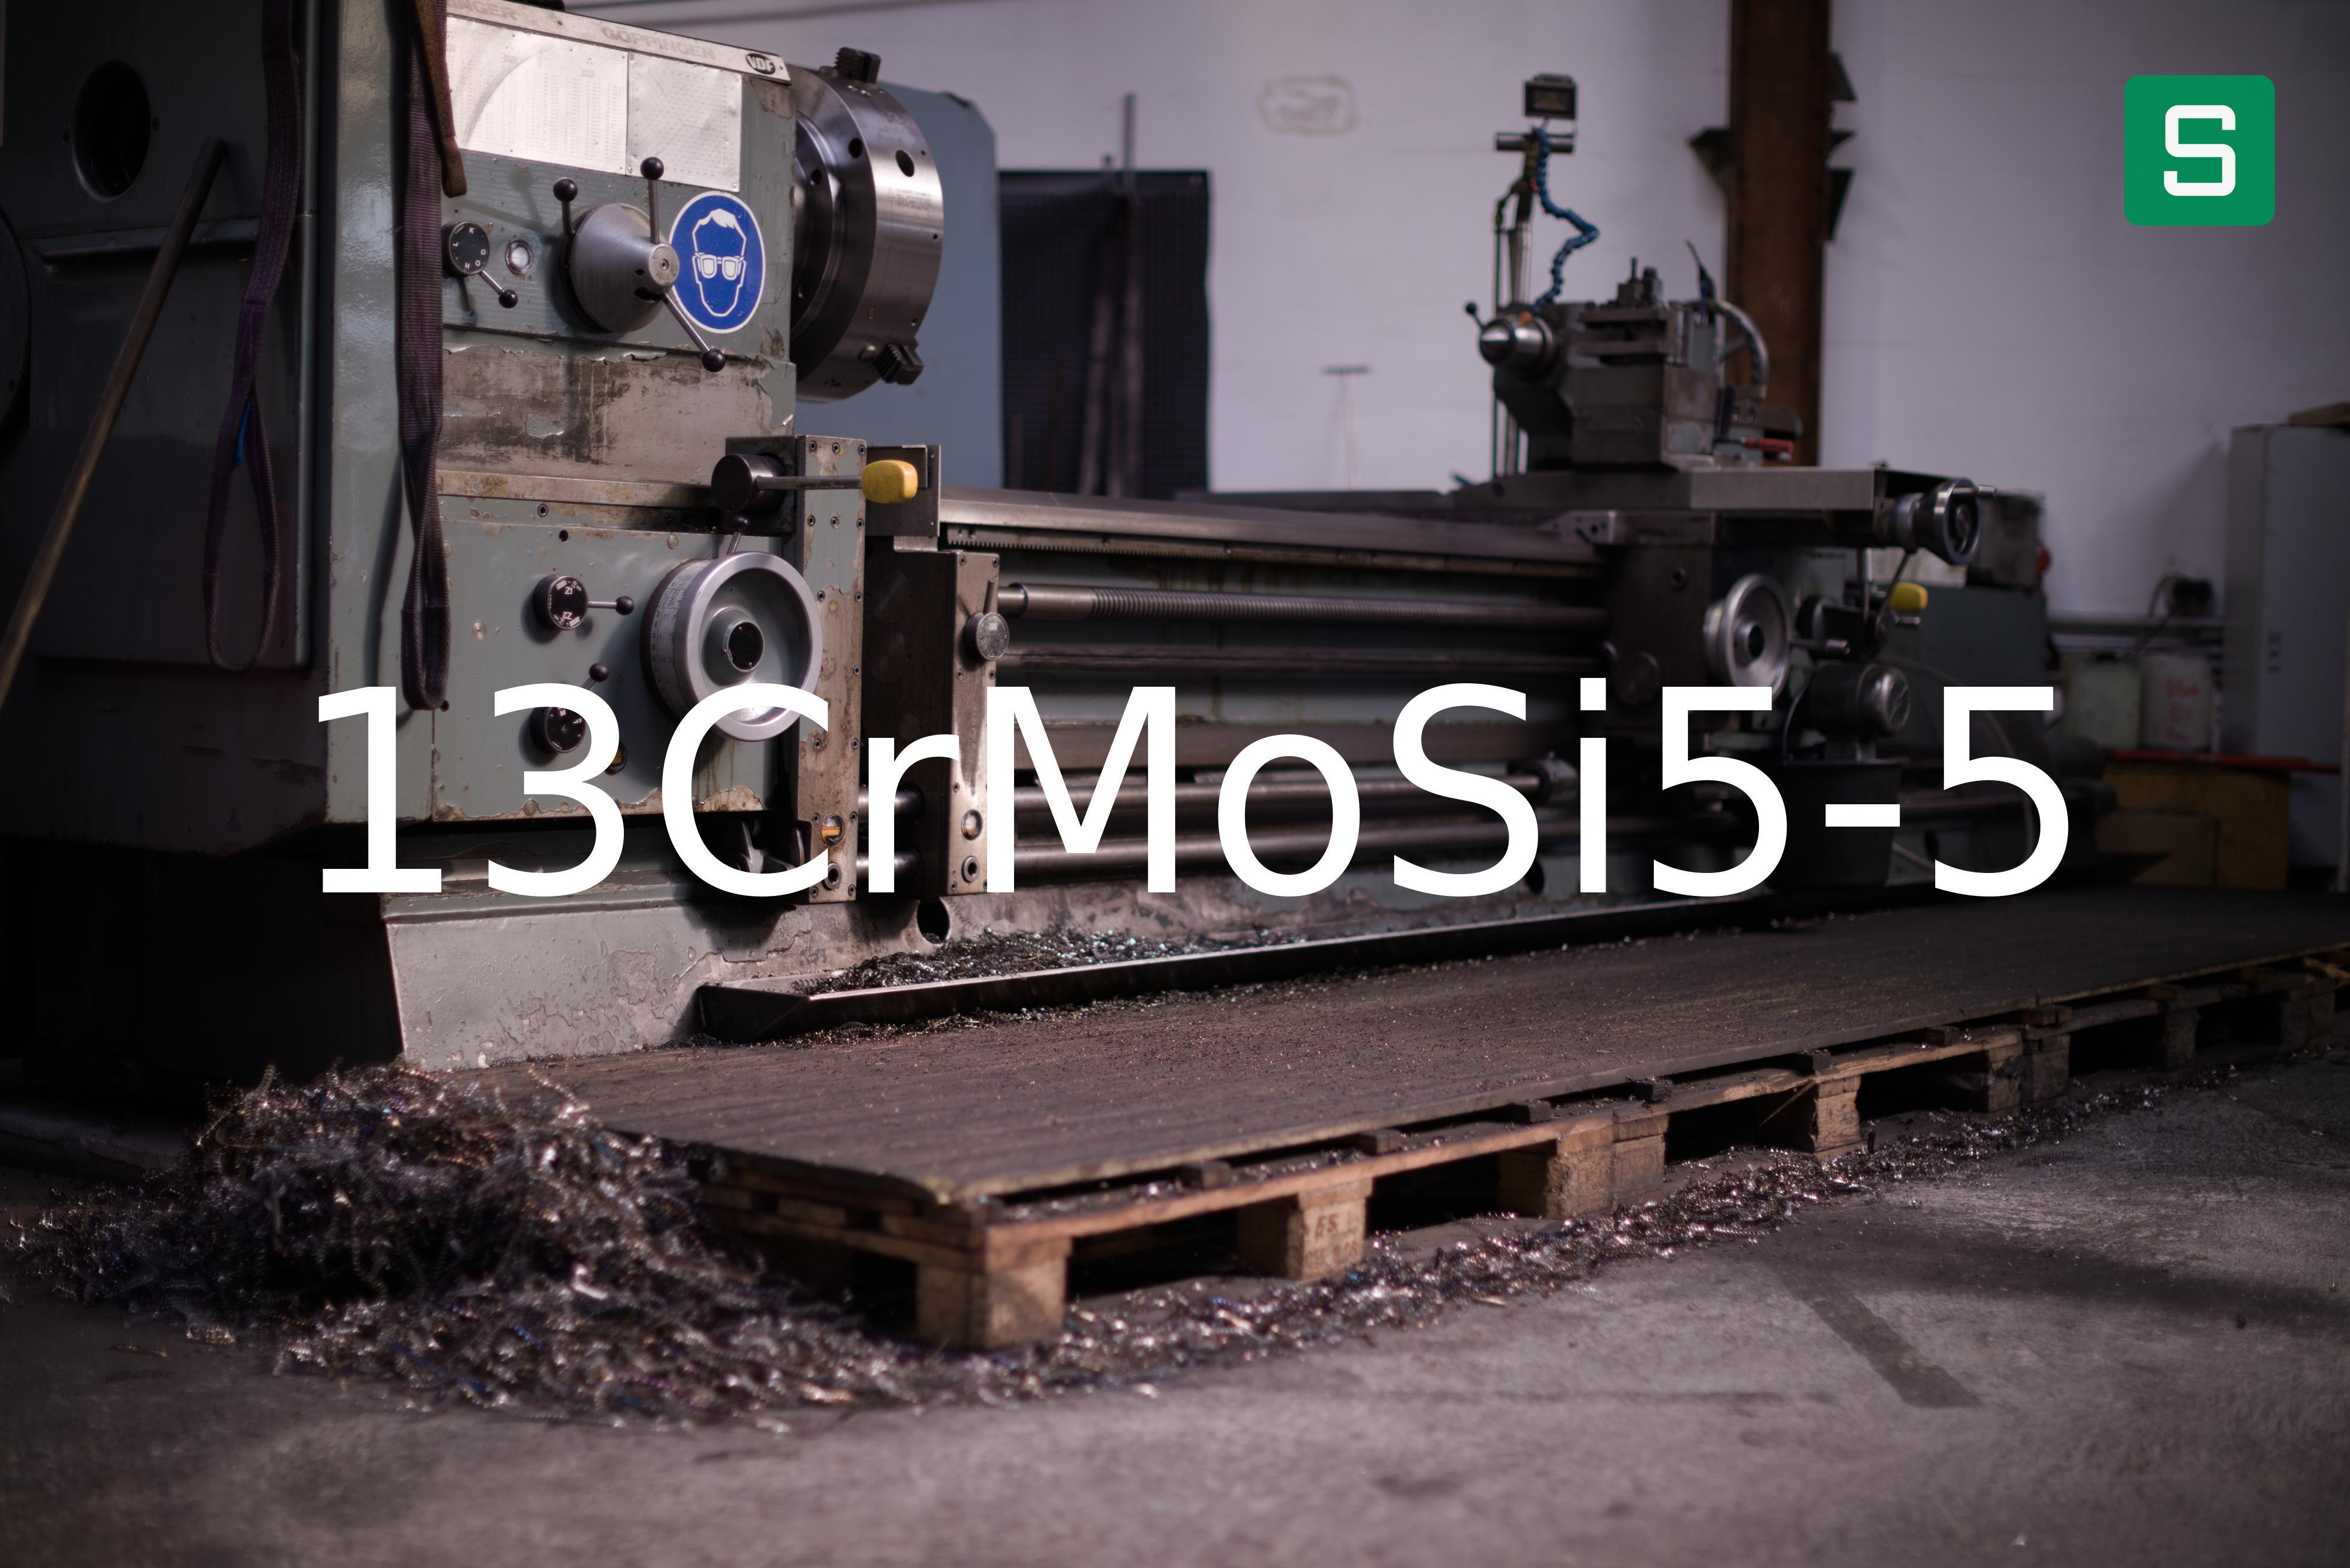 Steel Material: 13CrMoSi5-5